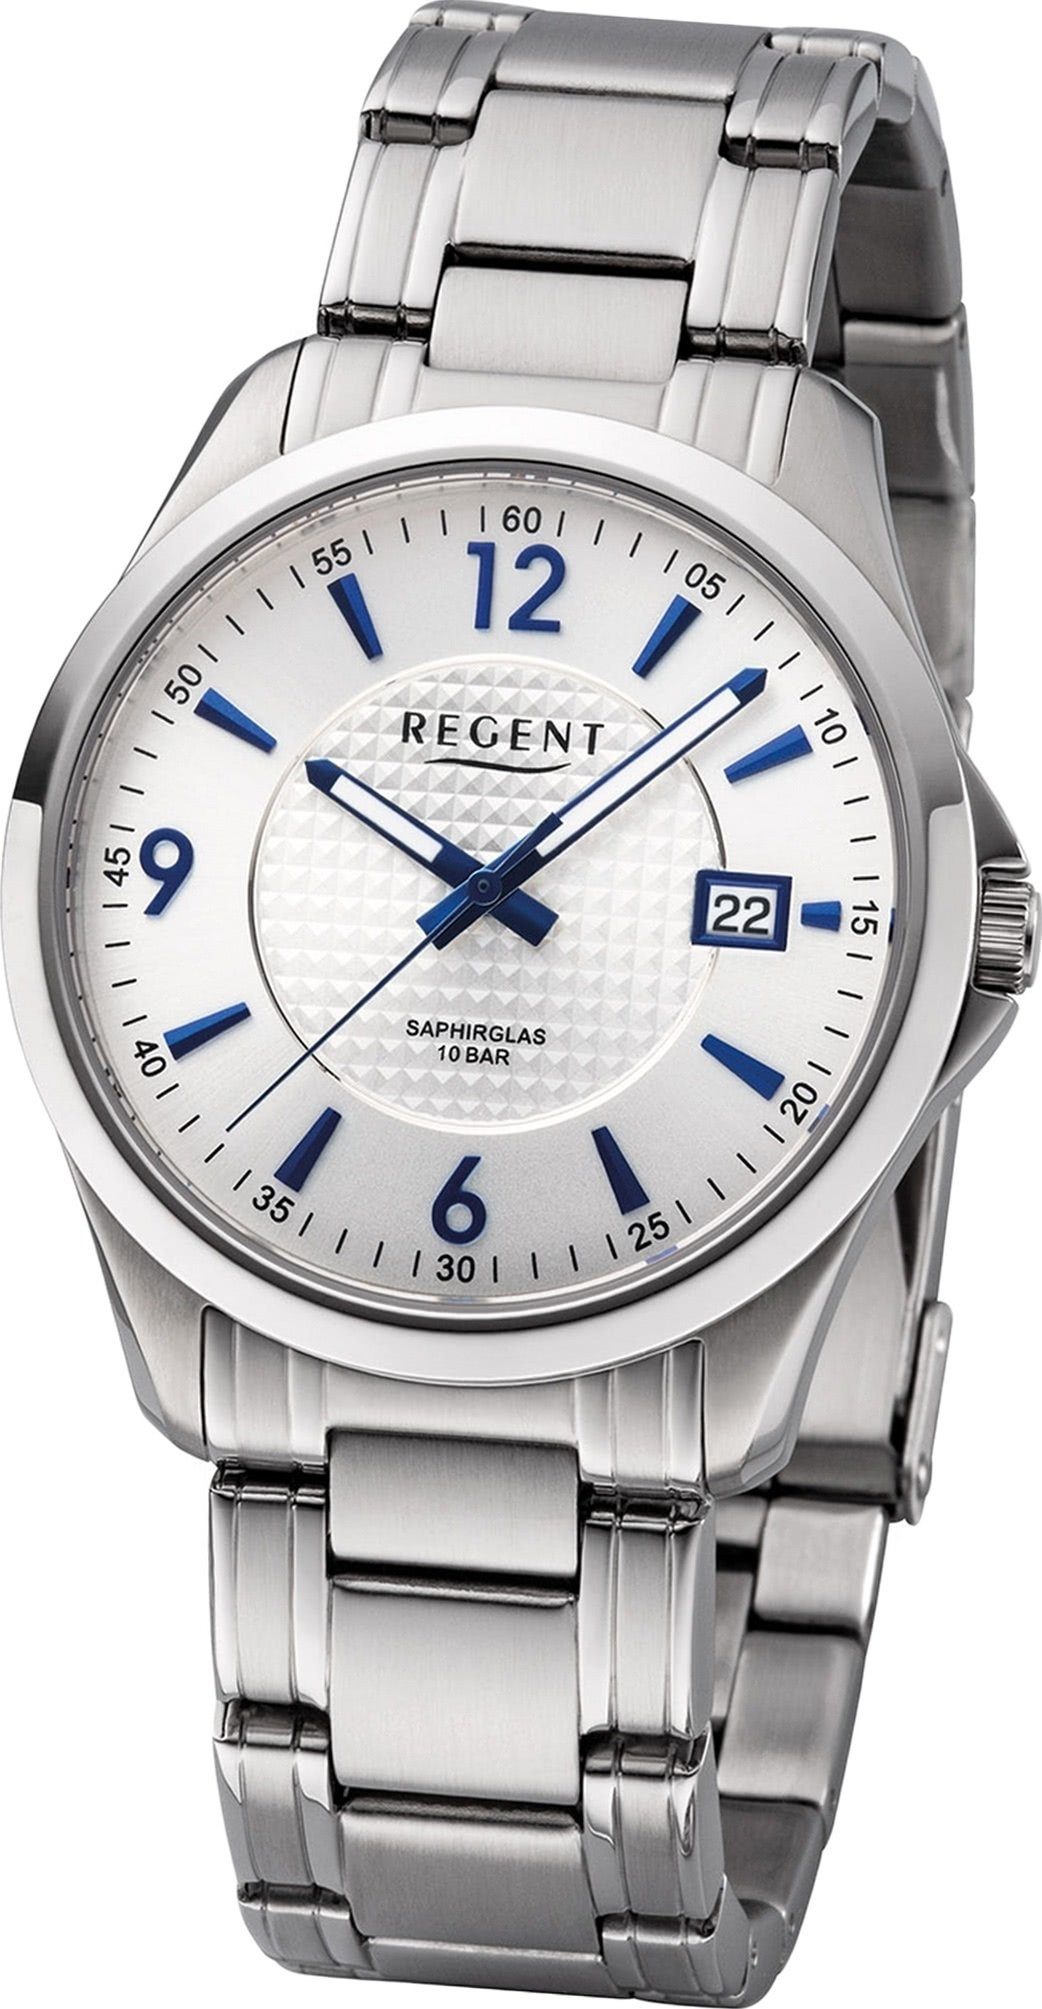 Regent Quarzuhr Uhr Gehäuse, rundes Herrenuhr F-1185 mittel Metall (ca. Regent 39mm) silber, Metallarmband Analog, Herren